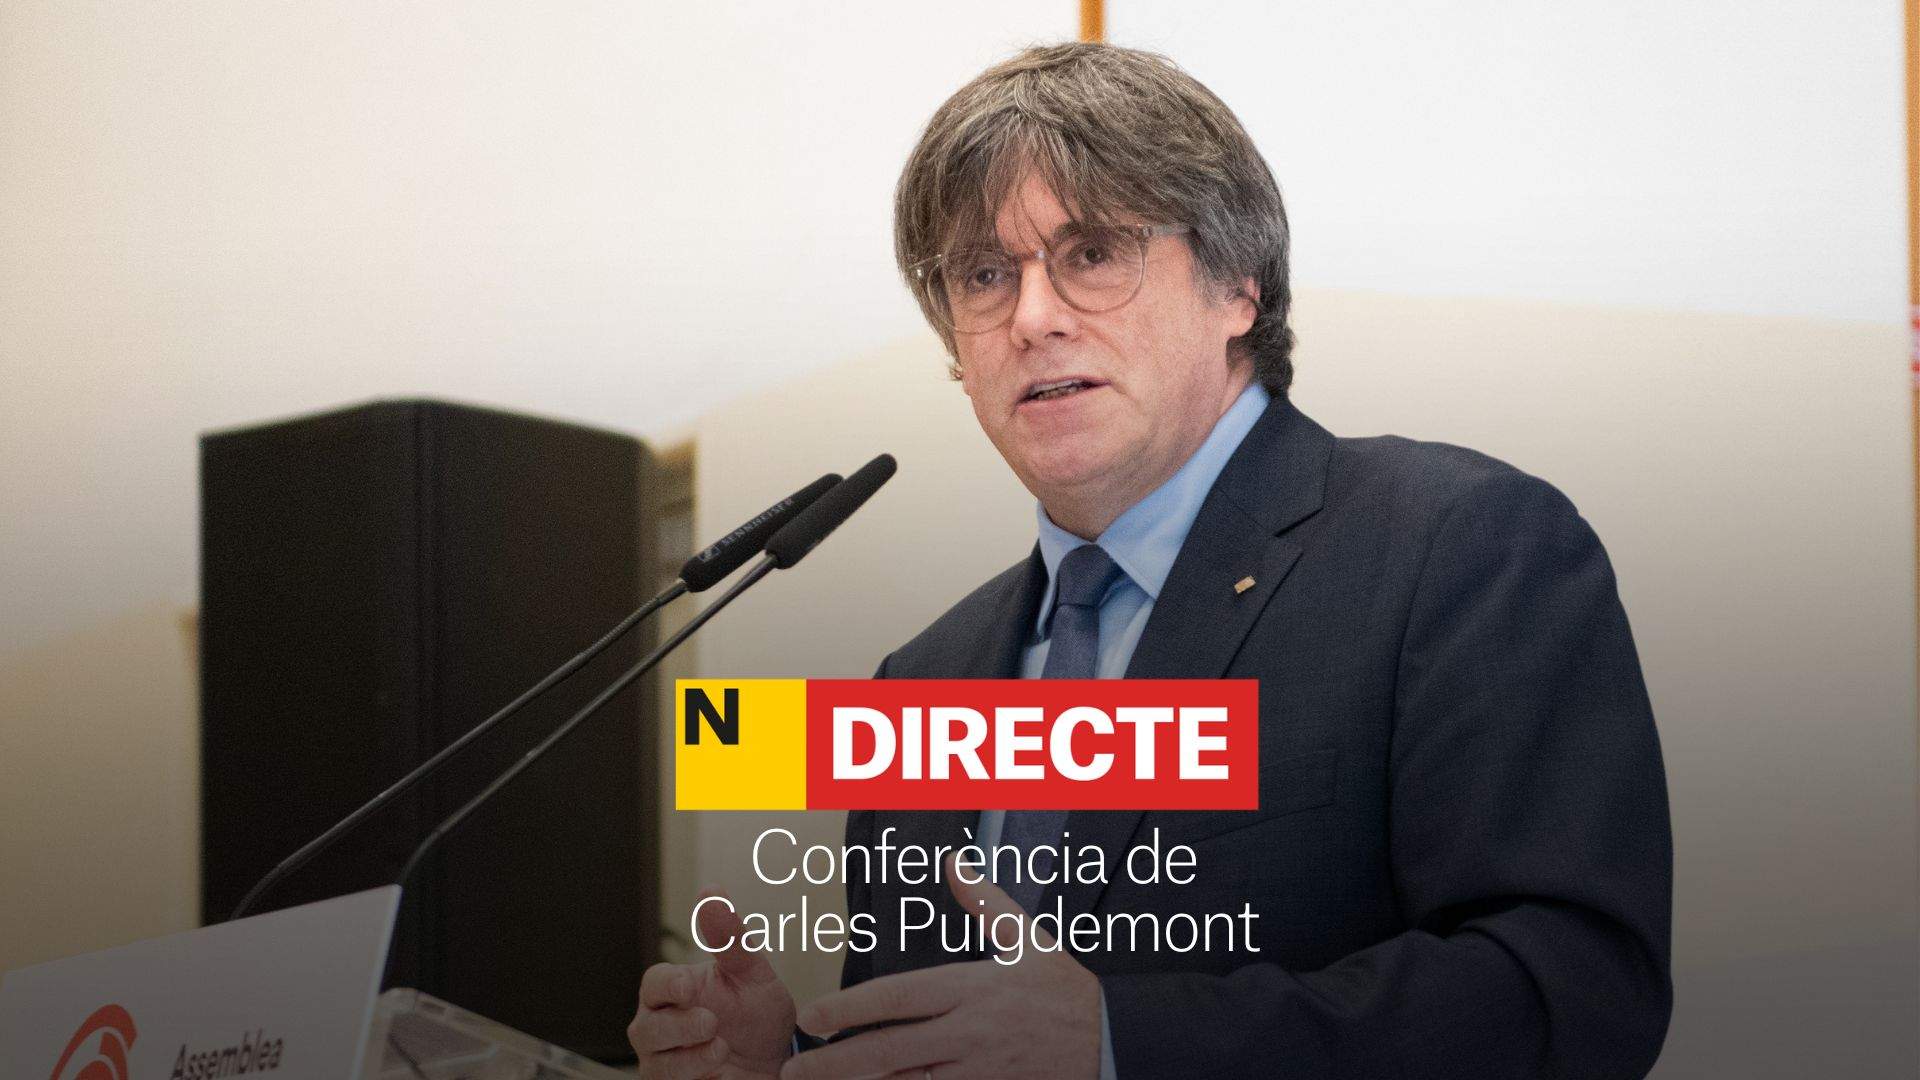 Puigdemont anuncia que será candidato a las elecciones catalanas, DIRECTO | Última hora y reacciones